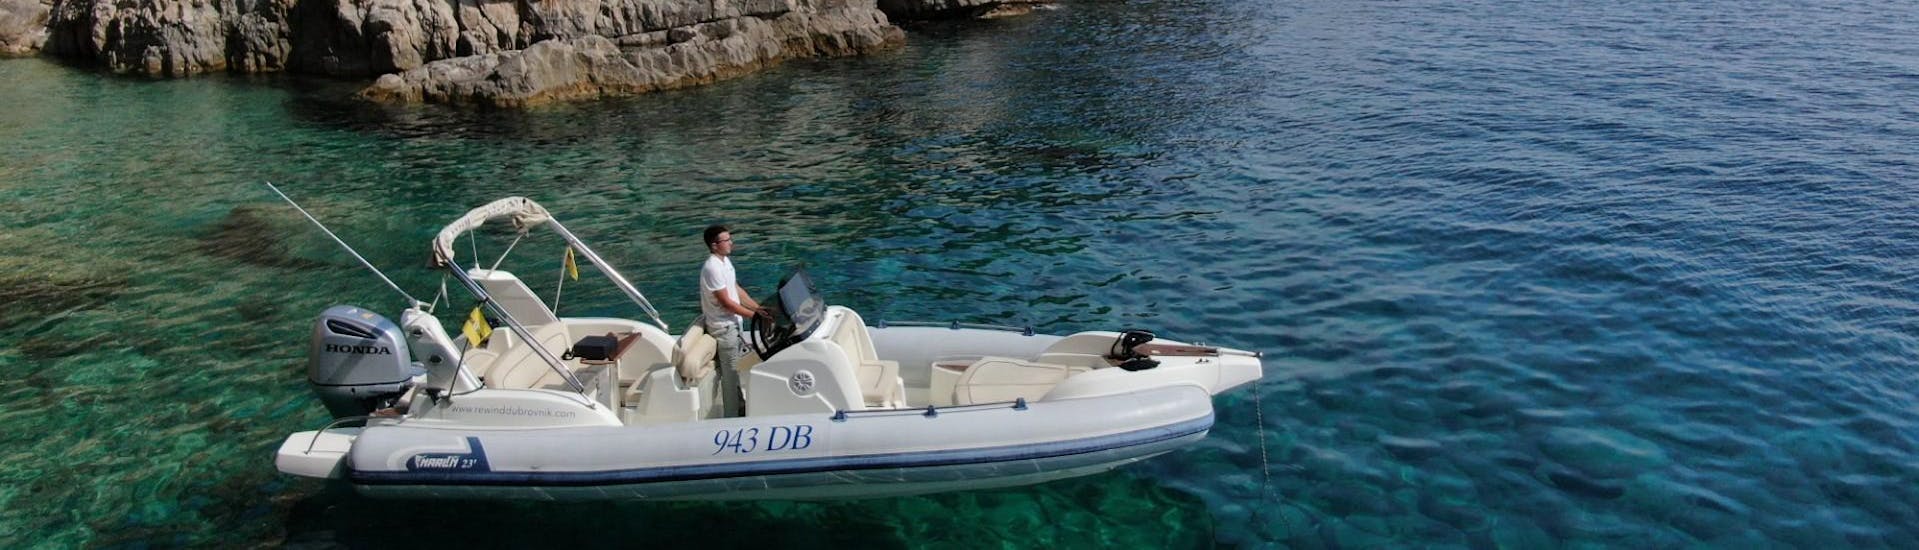 Paseo en barco privado de Dubrovnik a Mljet con baño en el mar & avistamiento de fauna.